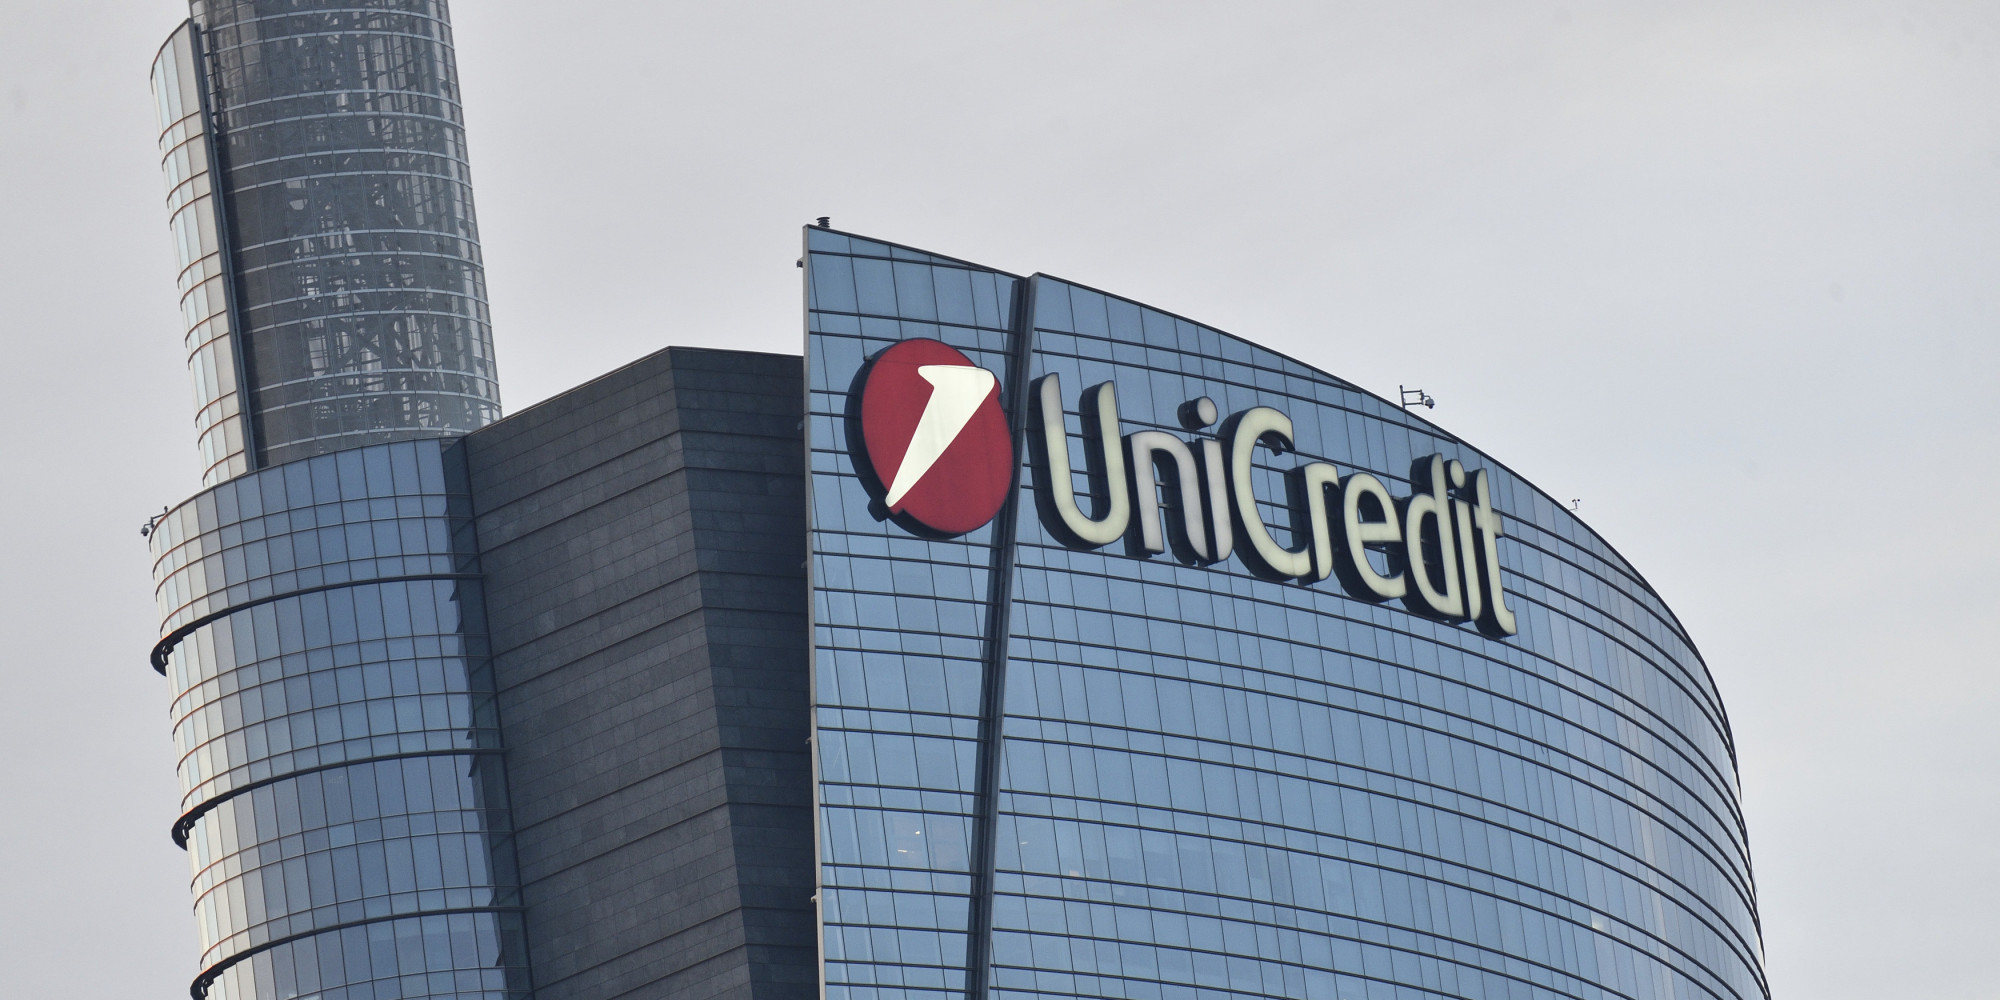 Il furto di dati ad Unicredit: perchè preoccupa, e perchè no